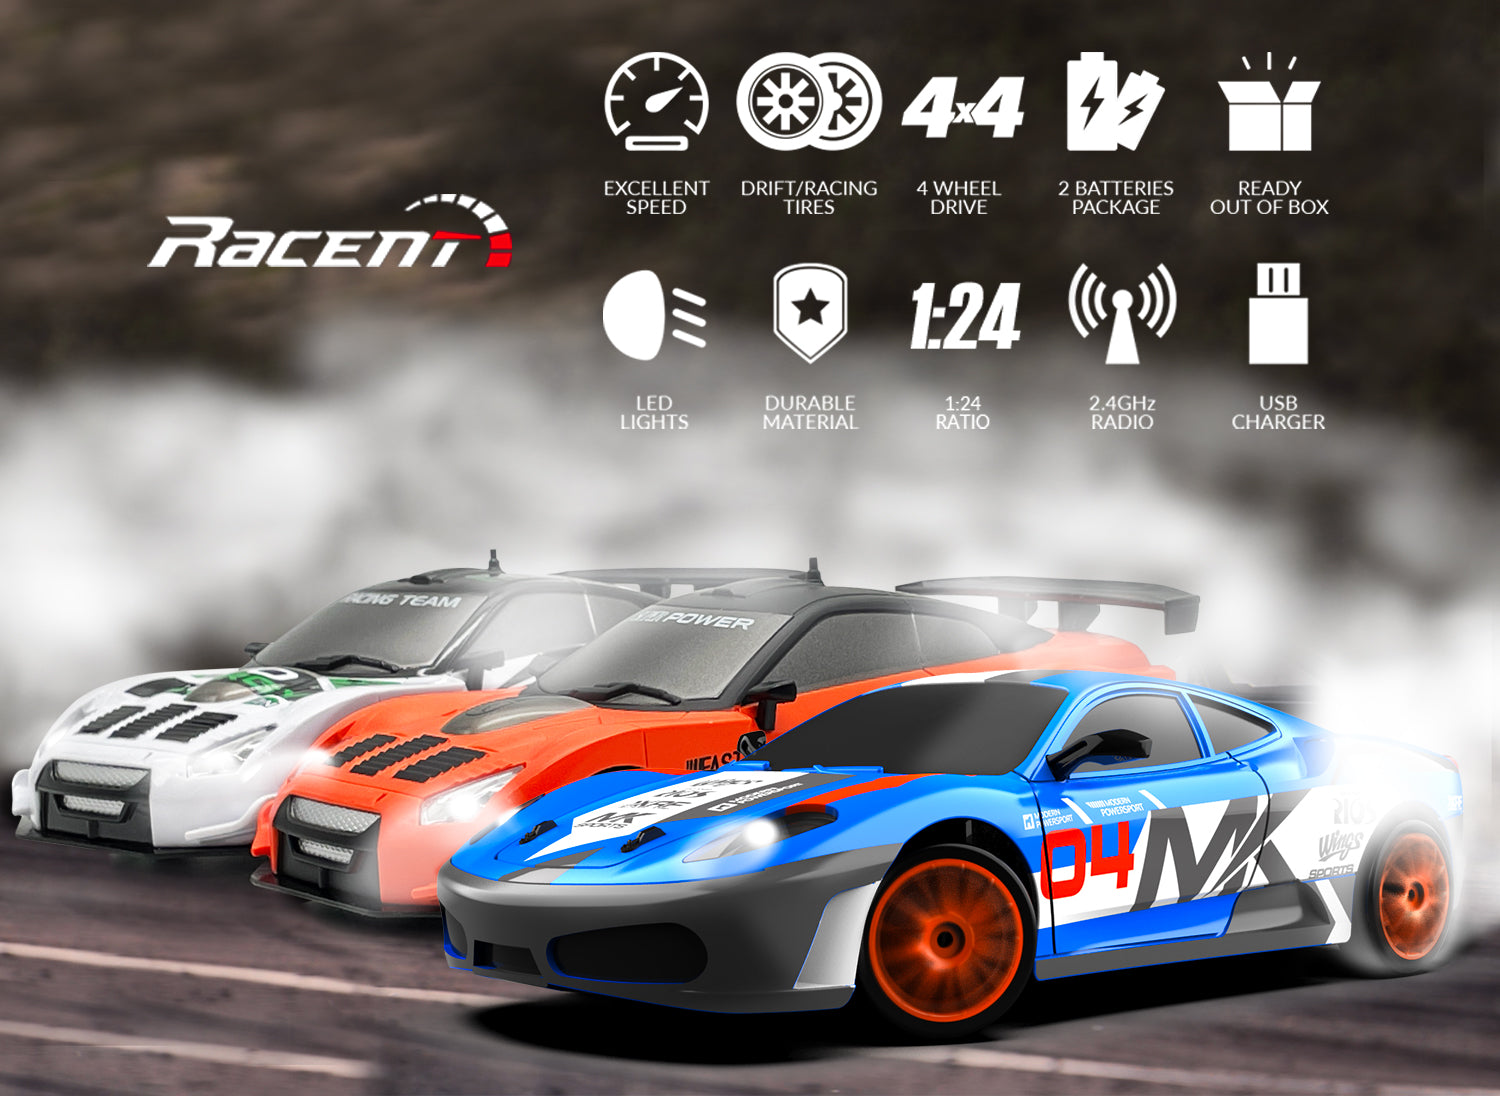 RACENT Blaze Racer: 1:24 Scale RC, 10MPH, LEDs, Drift